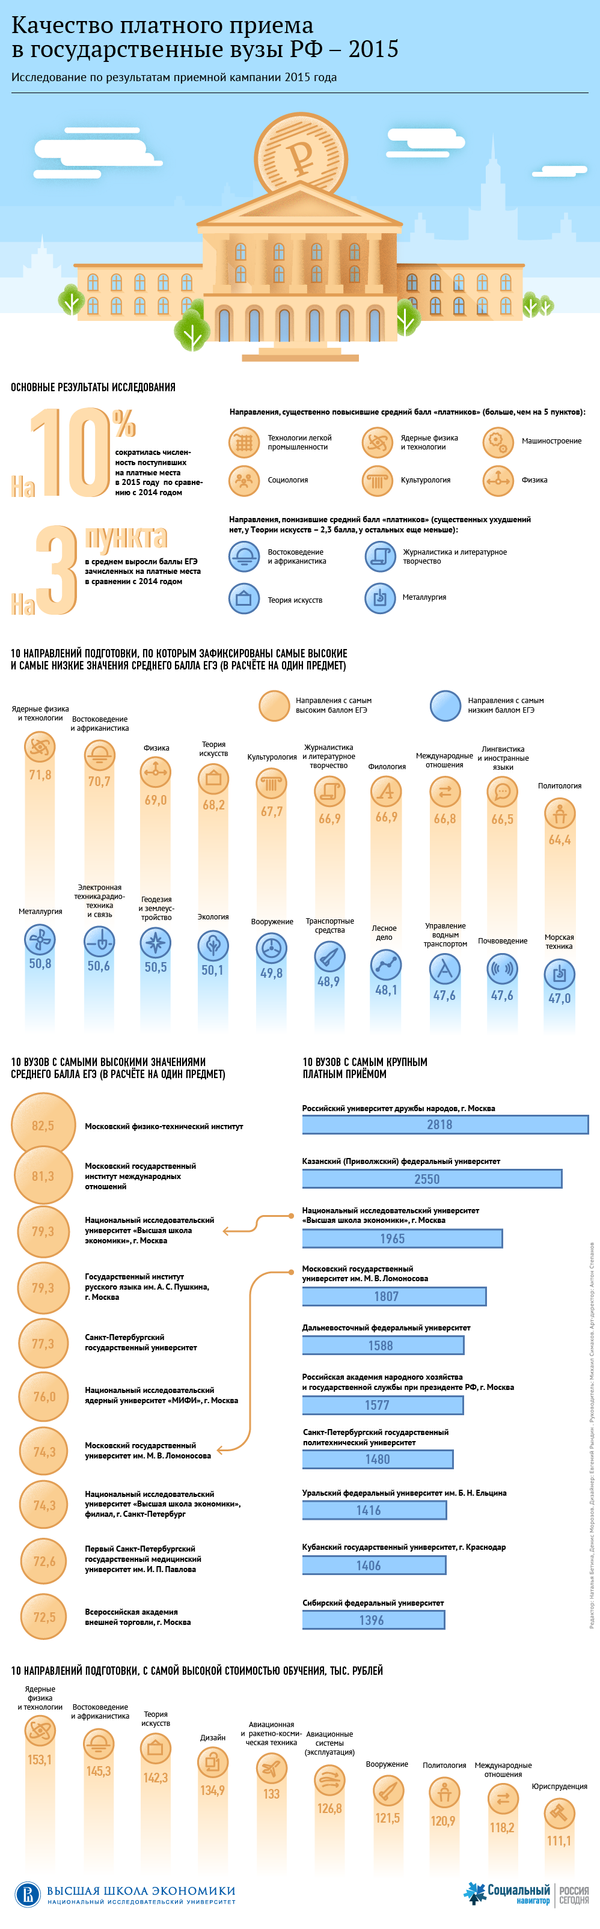 Качество платного приема в вузы РФ: основные результаты - Sputnik Узбекистан